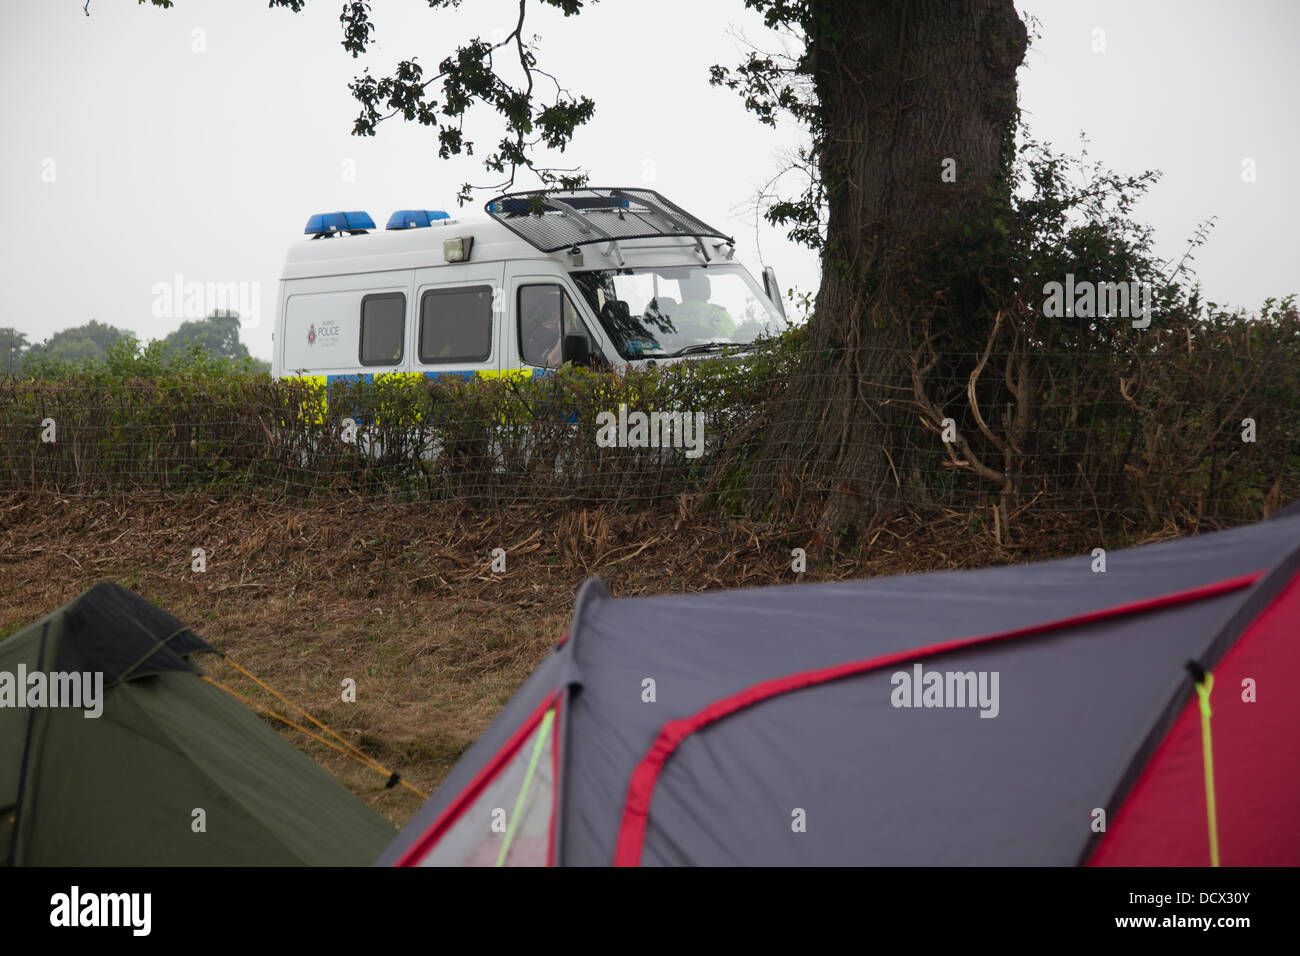 El campamento de reclamar el poder se configuró en un campo cerca de Balcombe okupado. La policía viendo el campamento de un calido van. Foto de stock